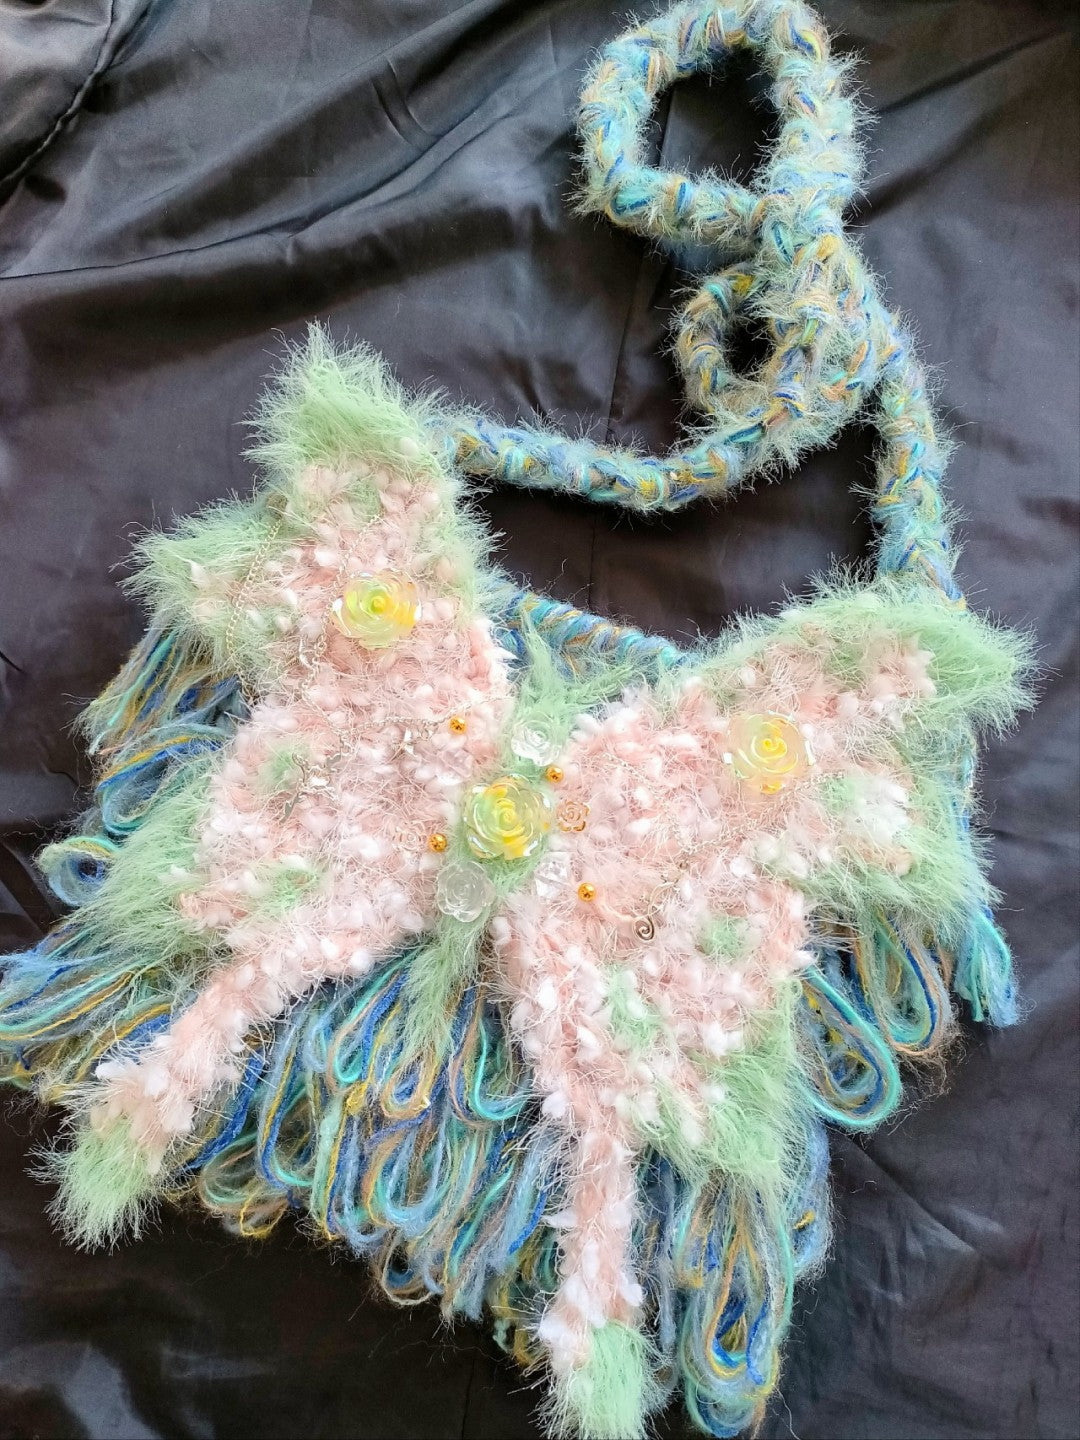 Fantasy Butterfly Crochet Crossbody Bag